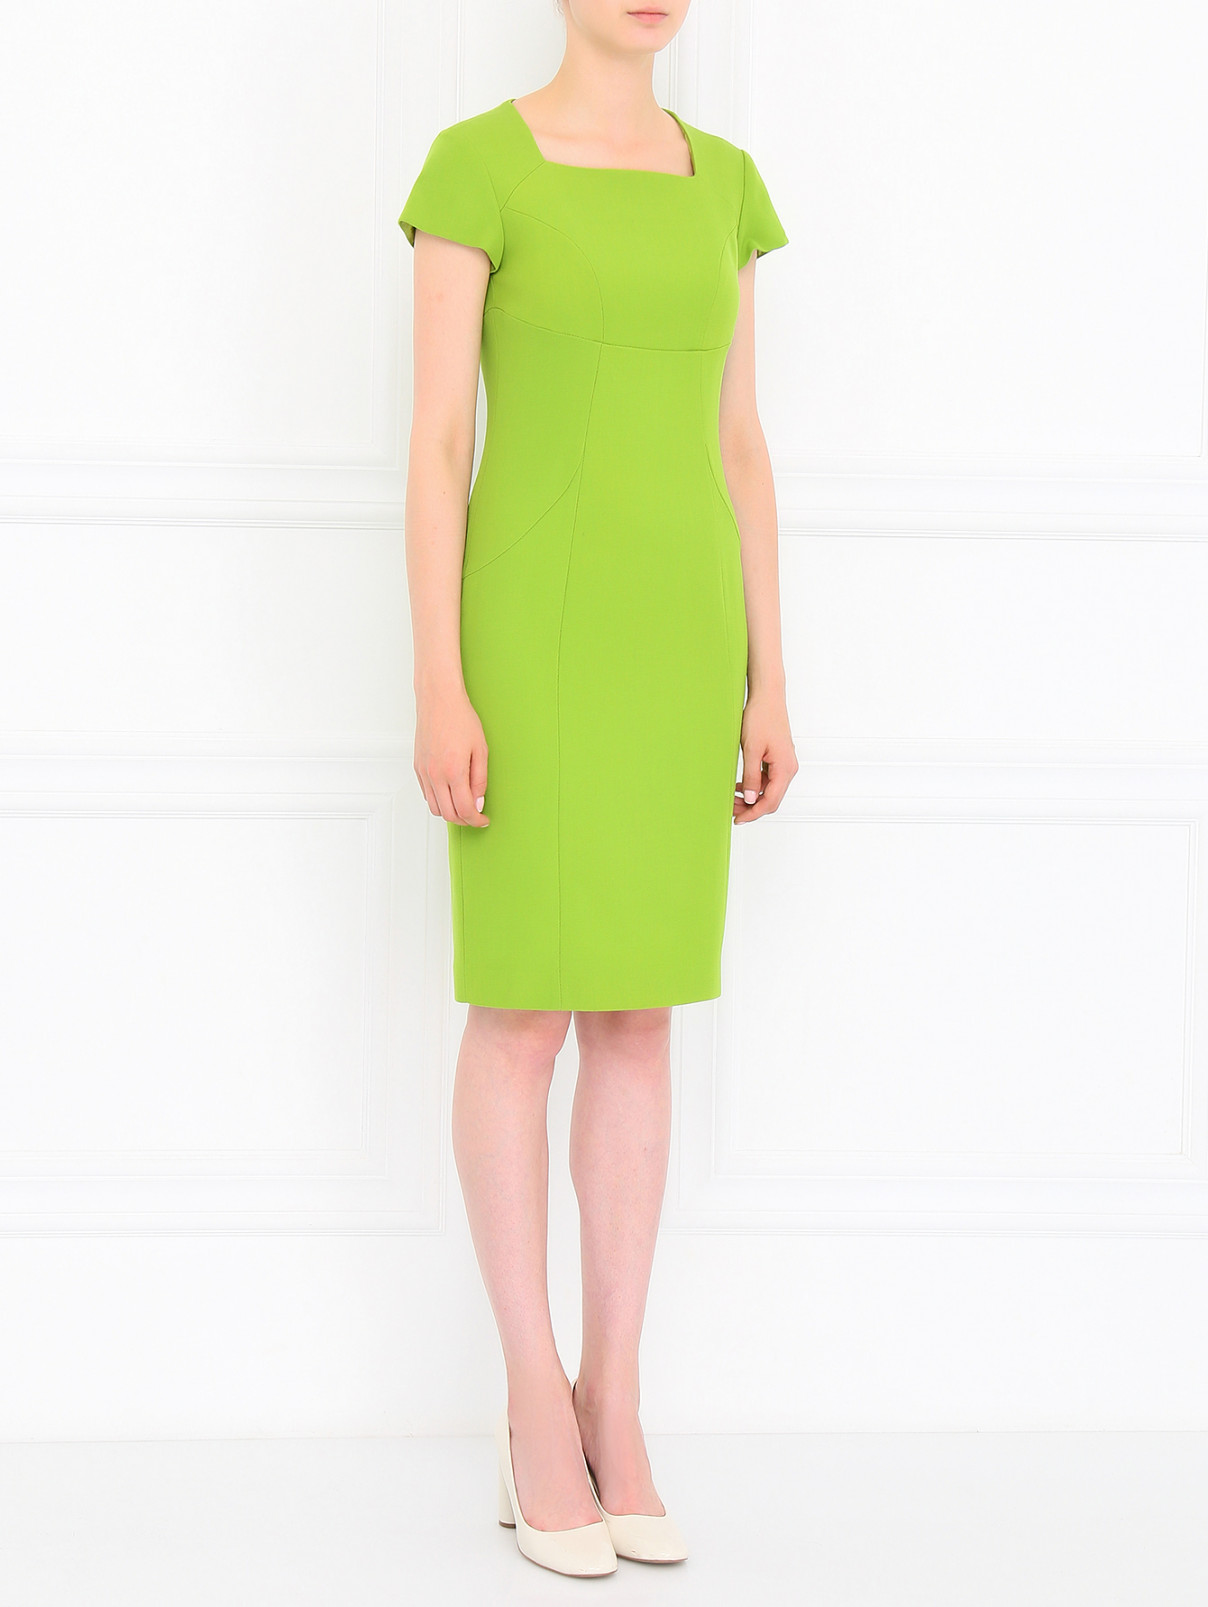 Платье-футляр из шерсти Moschino Cheap&Chic  –  Модель Общий вид  – Цвет:  Зеленый